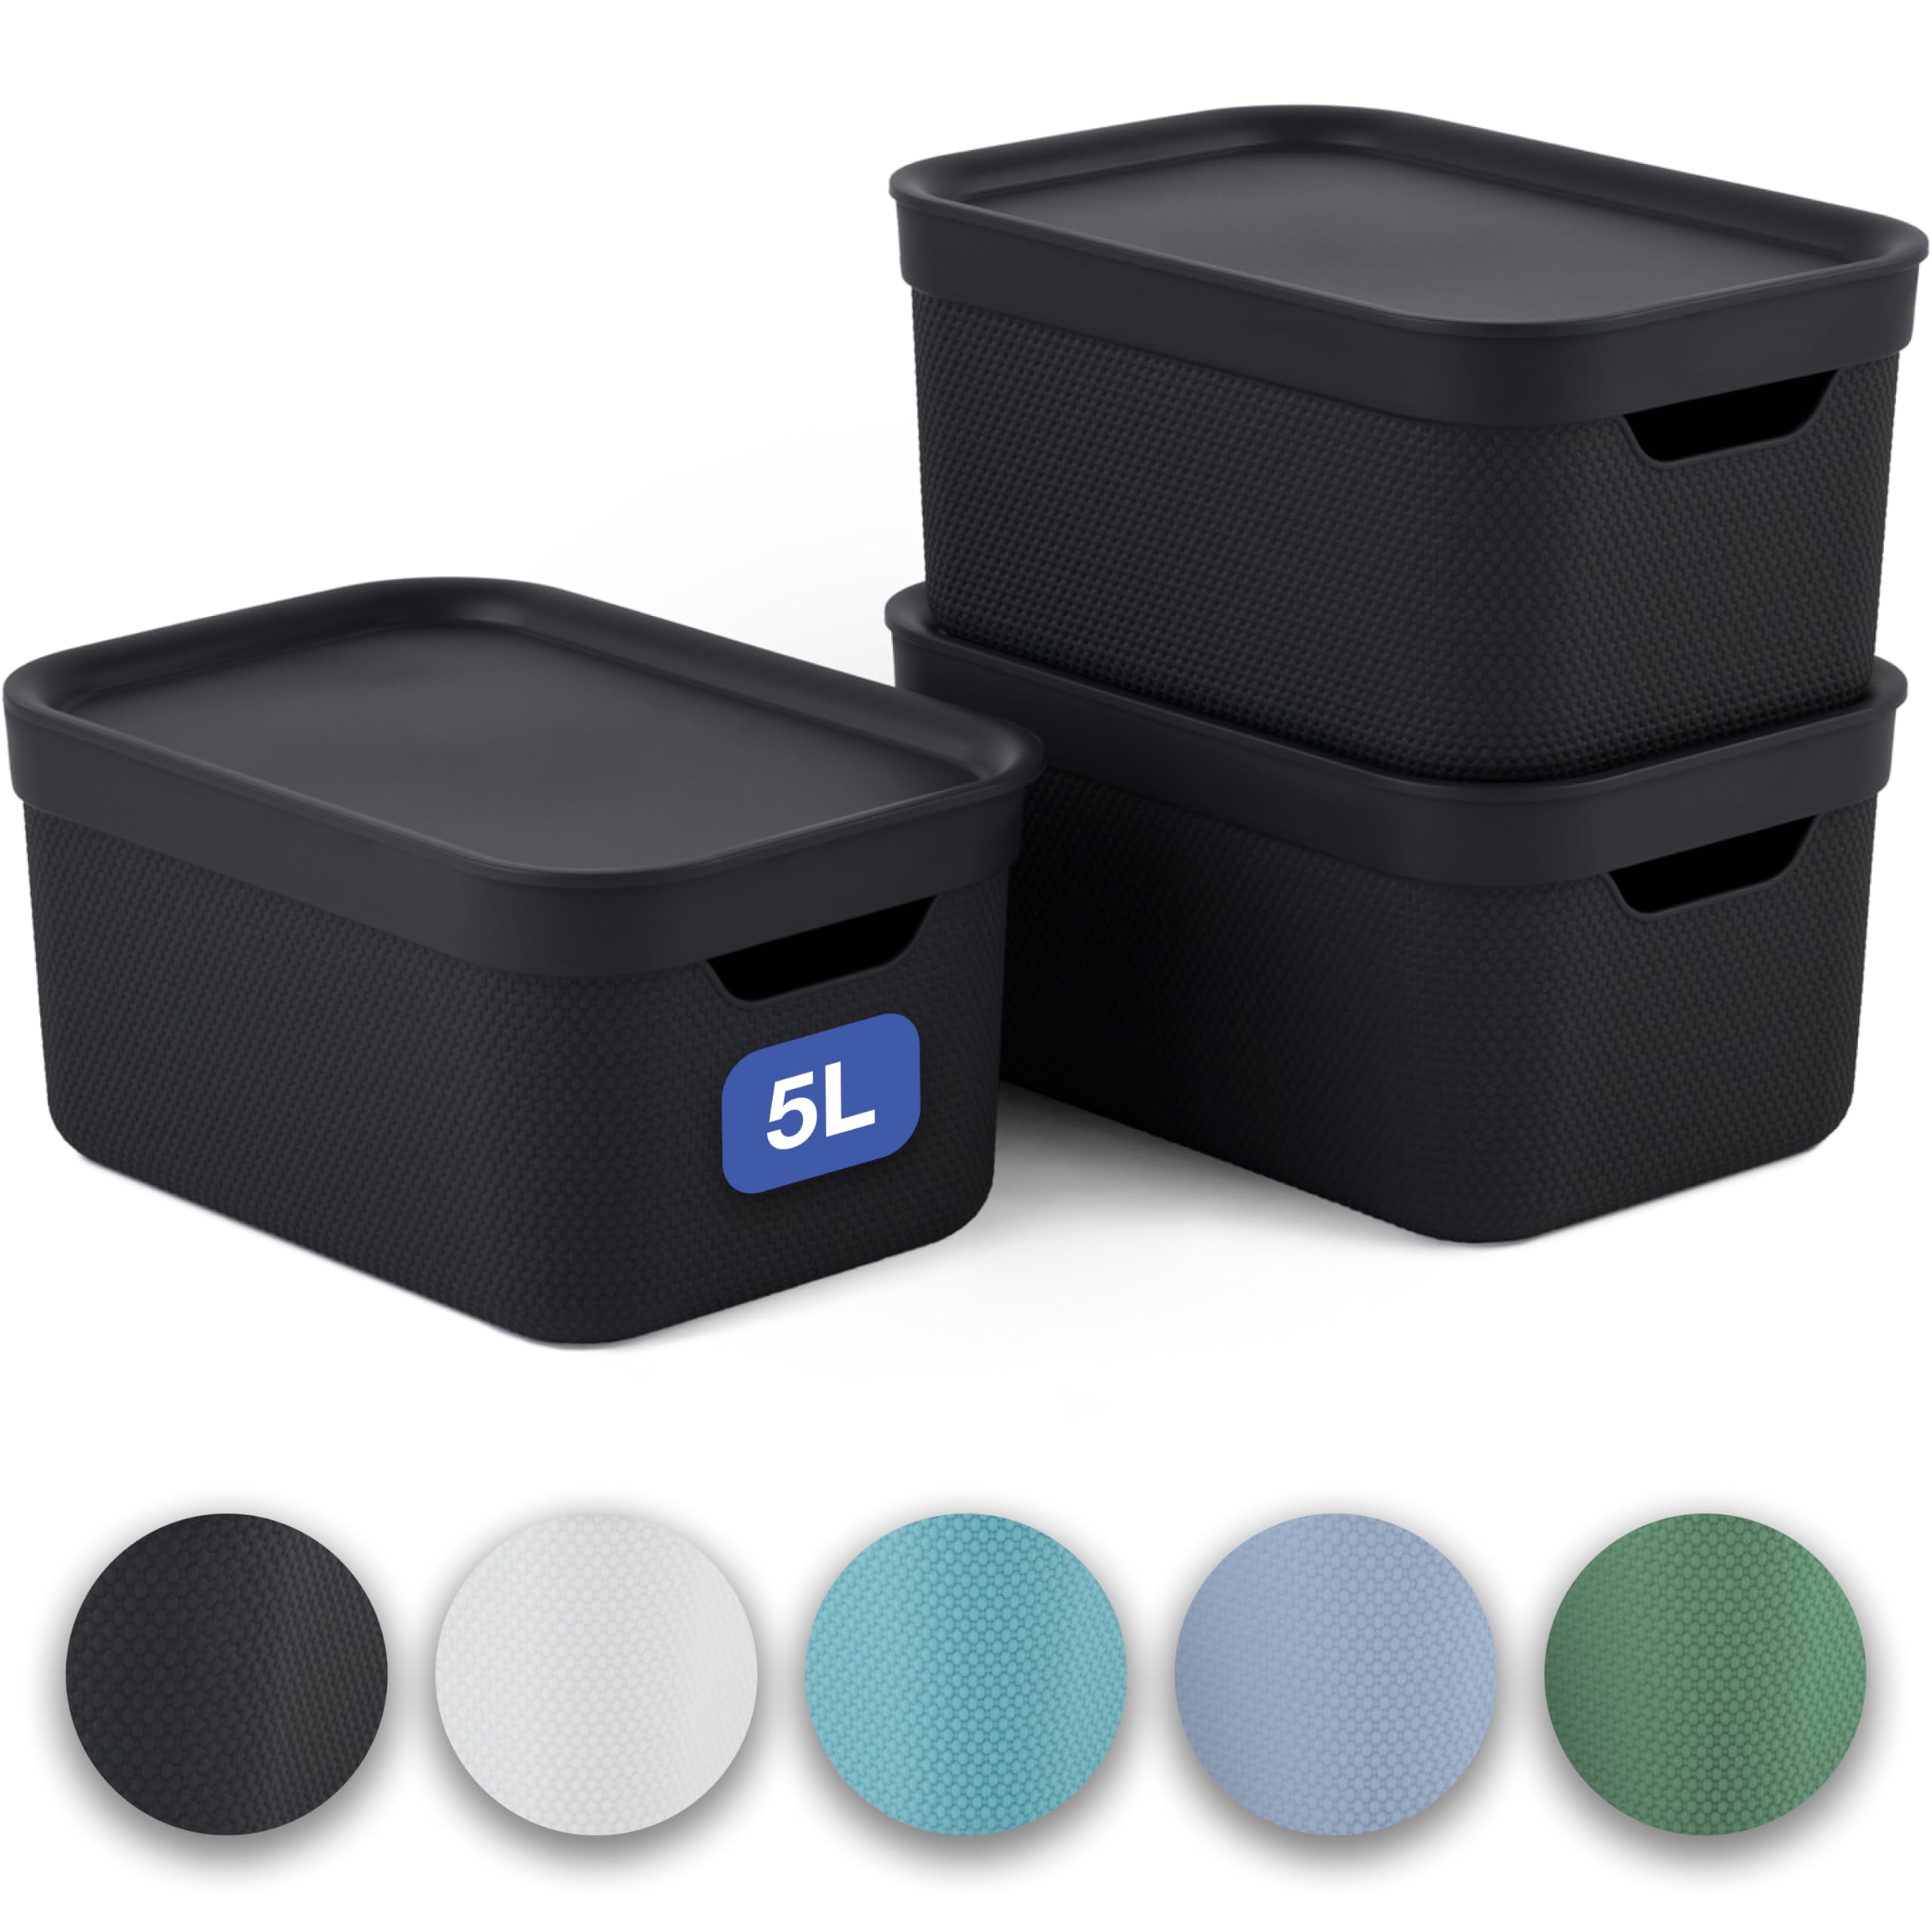 Haute Qualité Jive Dekobox - Lot de 3 boîtes de rangement décoratives de 5 l avec couvercle, plastique (PP recyclé), noires, 3x5 l (26,5 x 18,5 x 20 cm) 2dEbzU9pJ bien vendre